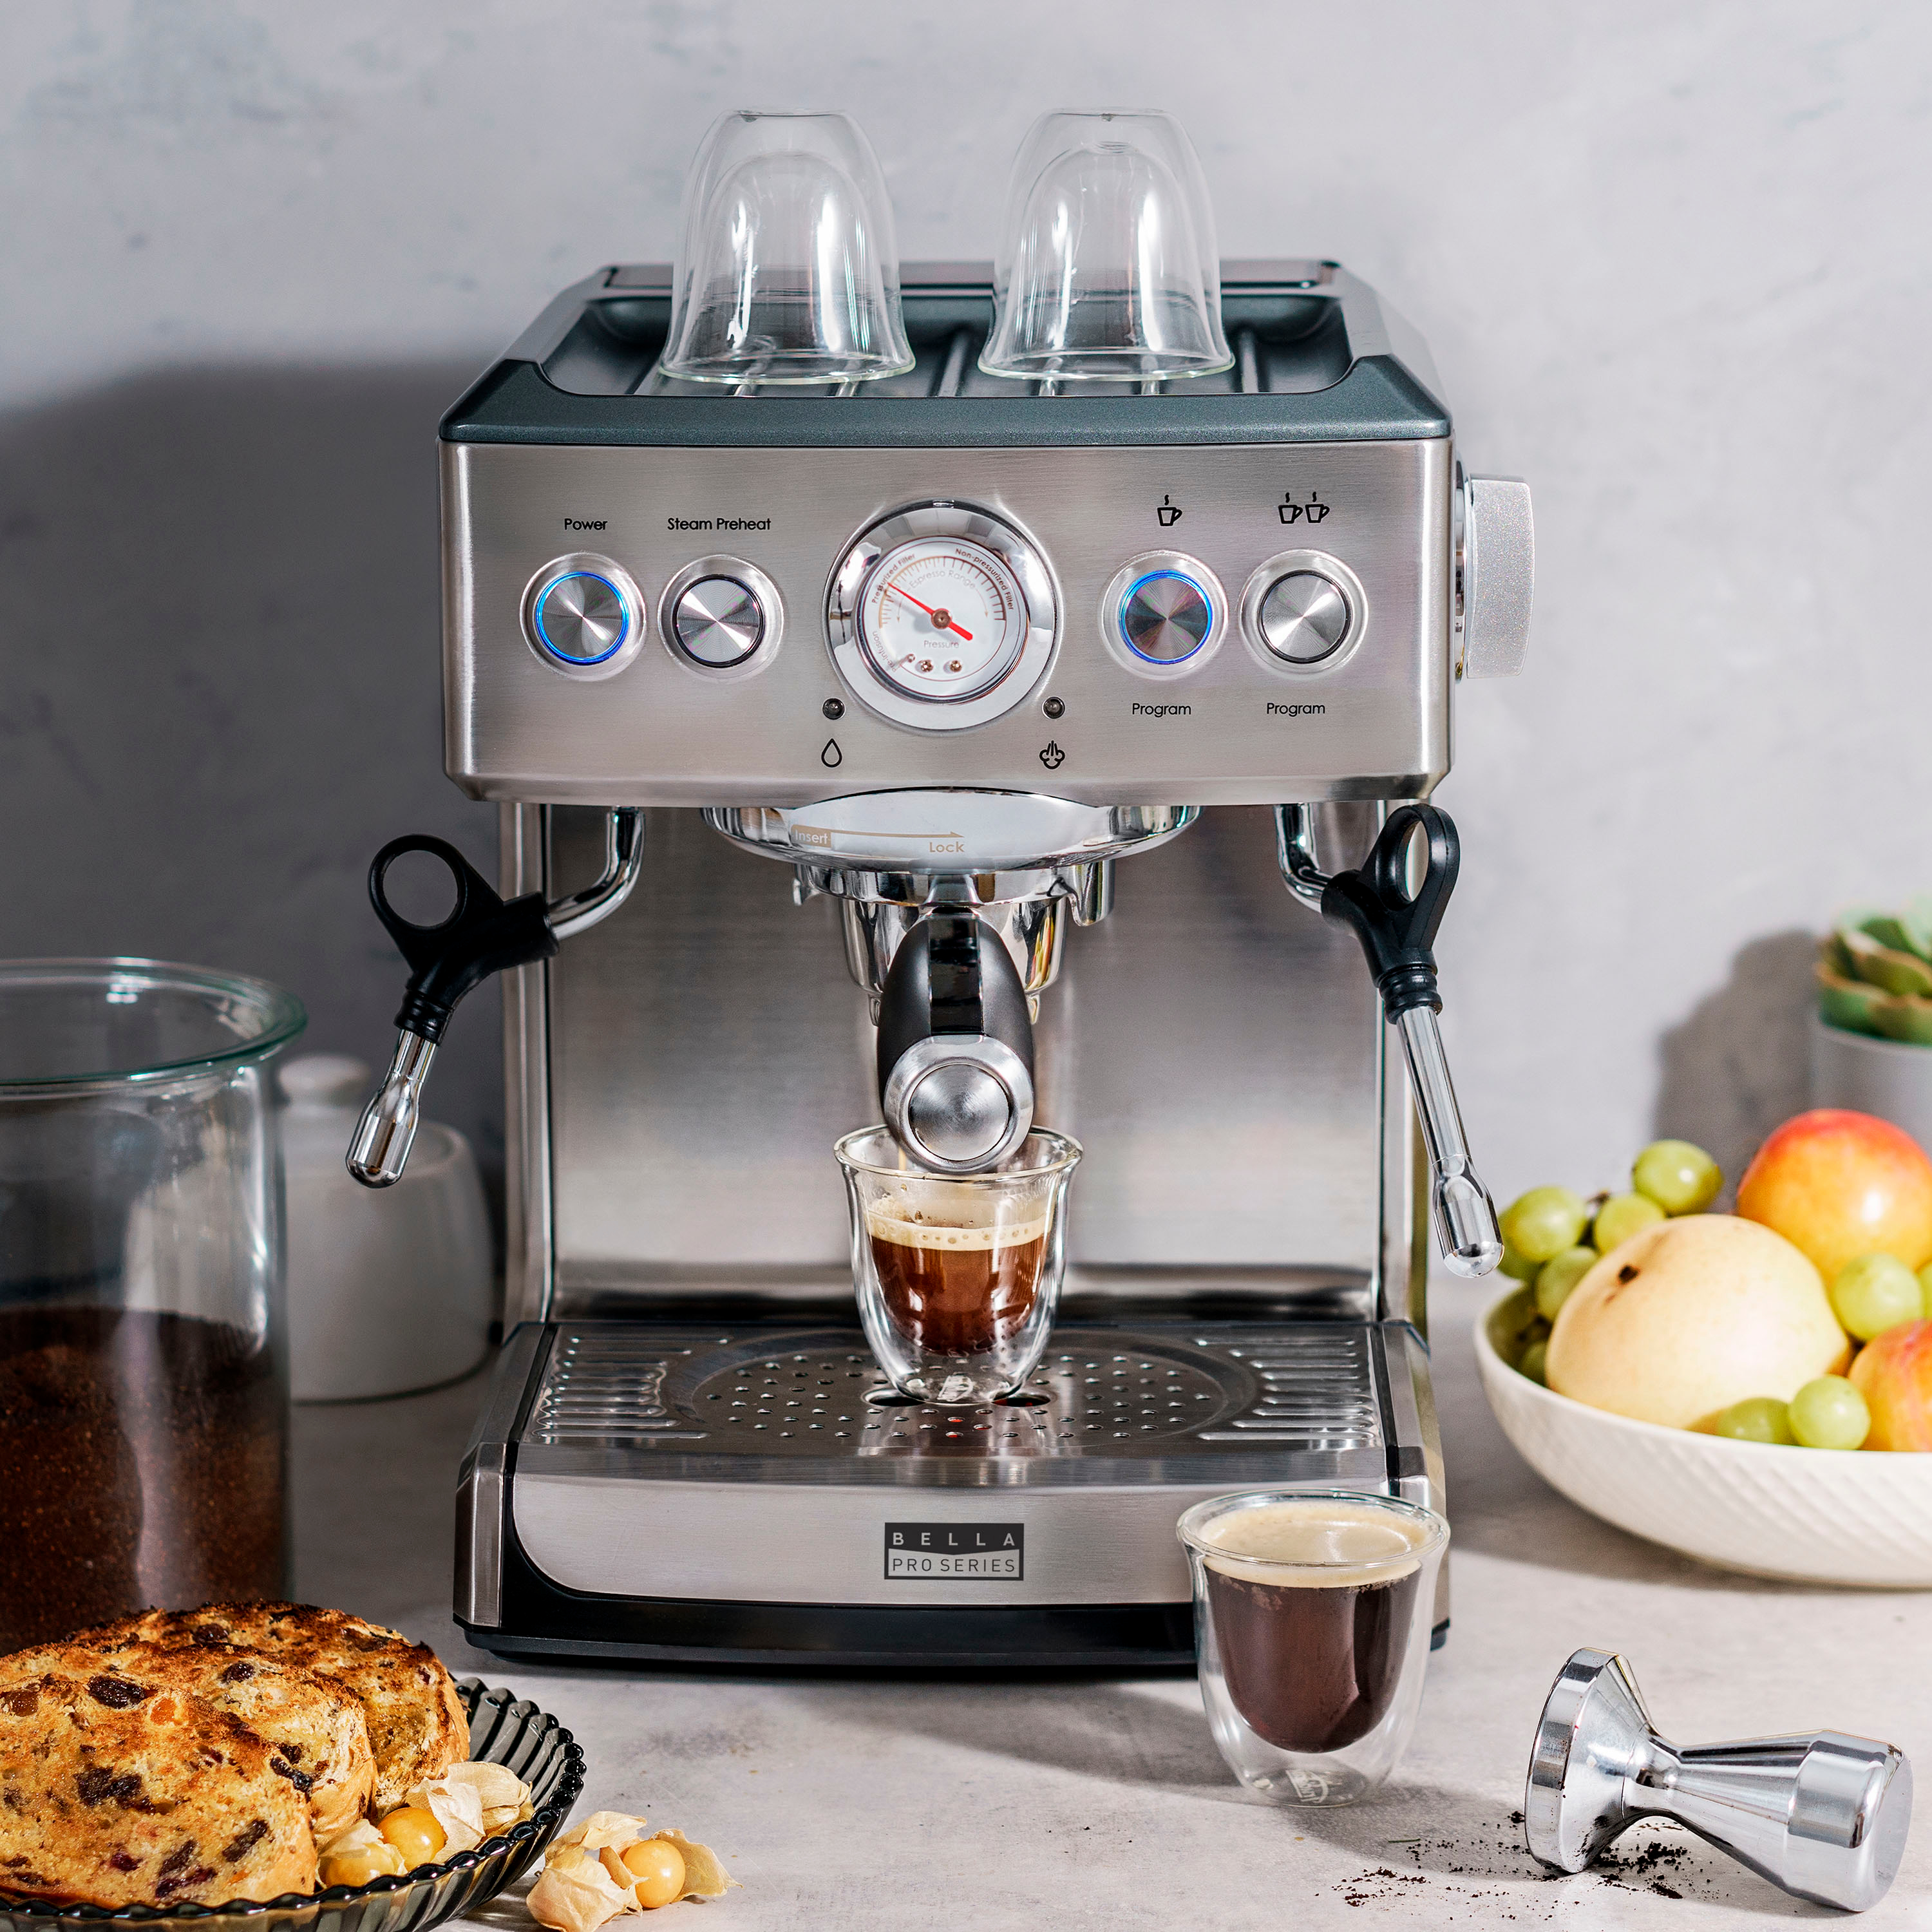 Brim 19 Bar Espresso Maker Review: Excellent Espresso at a Low Price